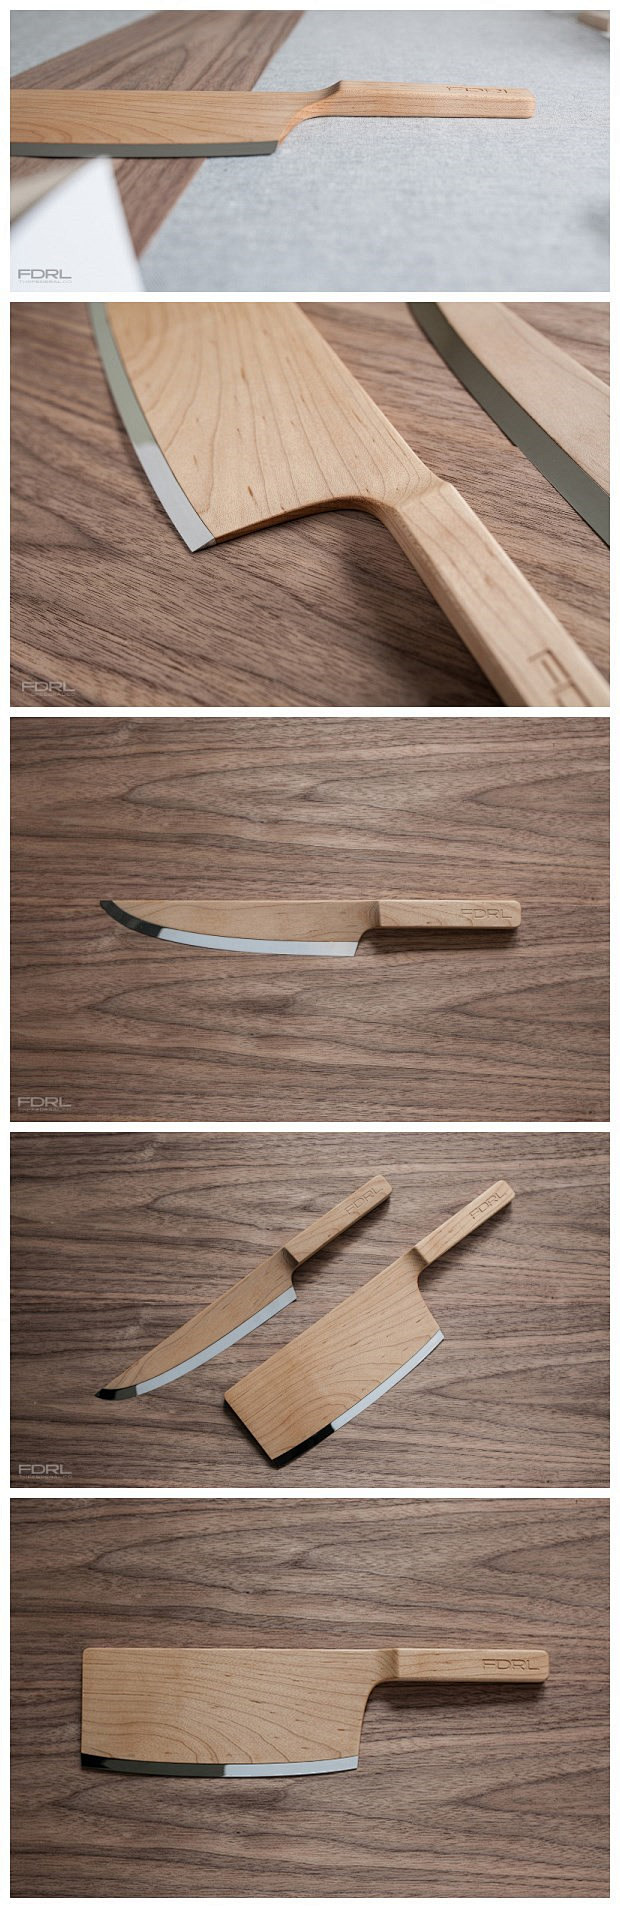 加拿大的枫木制成的刀具。